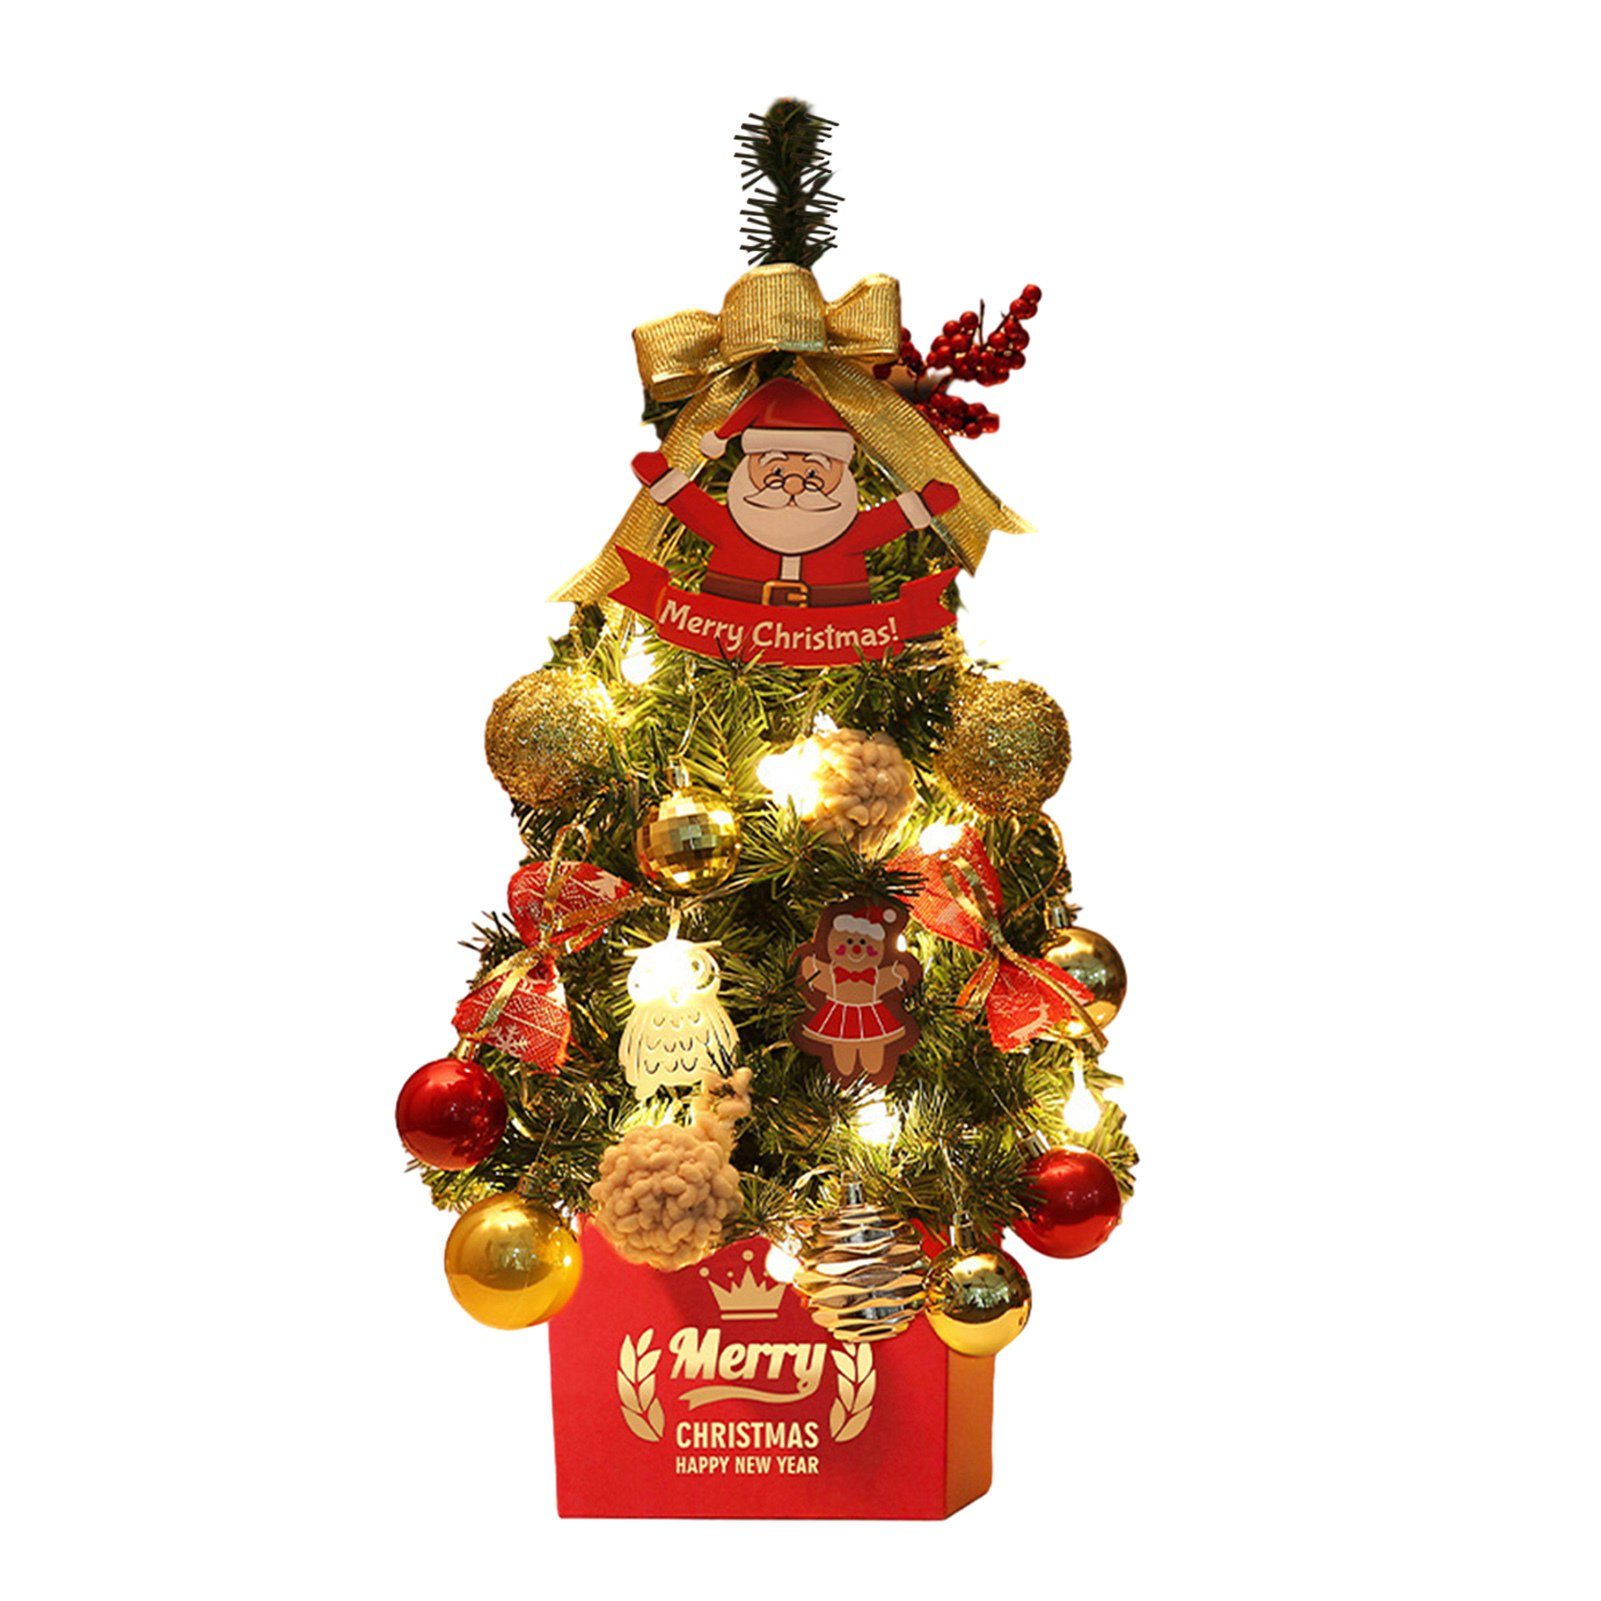 Blusmart Künstlicher Weihnachtsbaum 45 Cm Schöner Desktop-Weihnachtsbaum Mit Rot-goldenem Dekor, Mini-Weihnachtsbaum glod